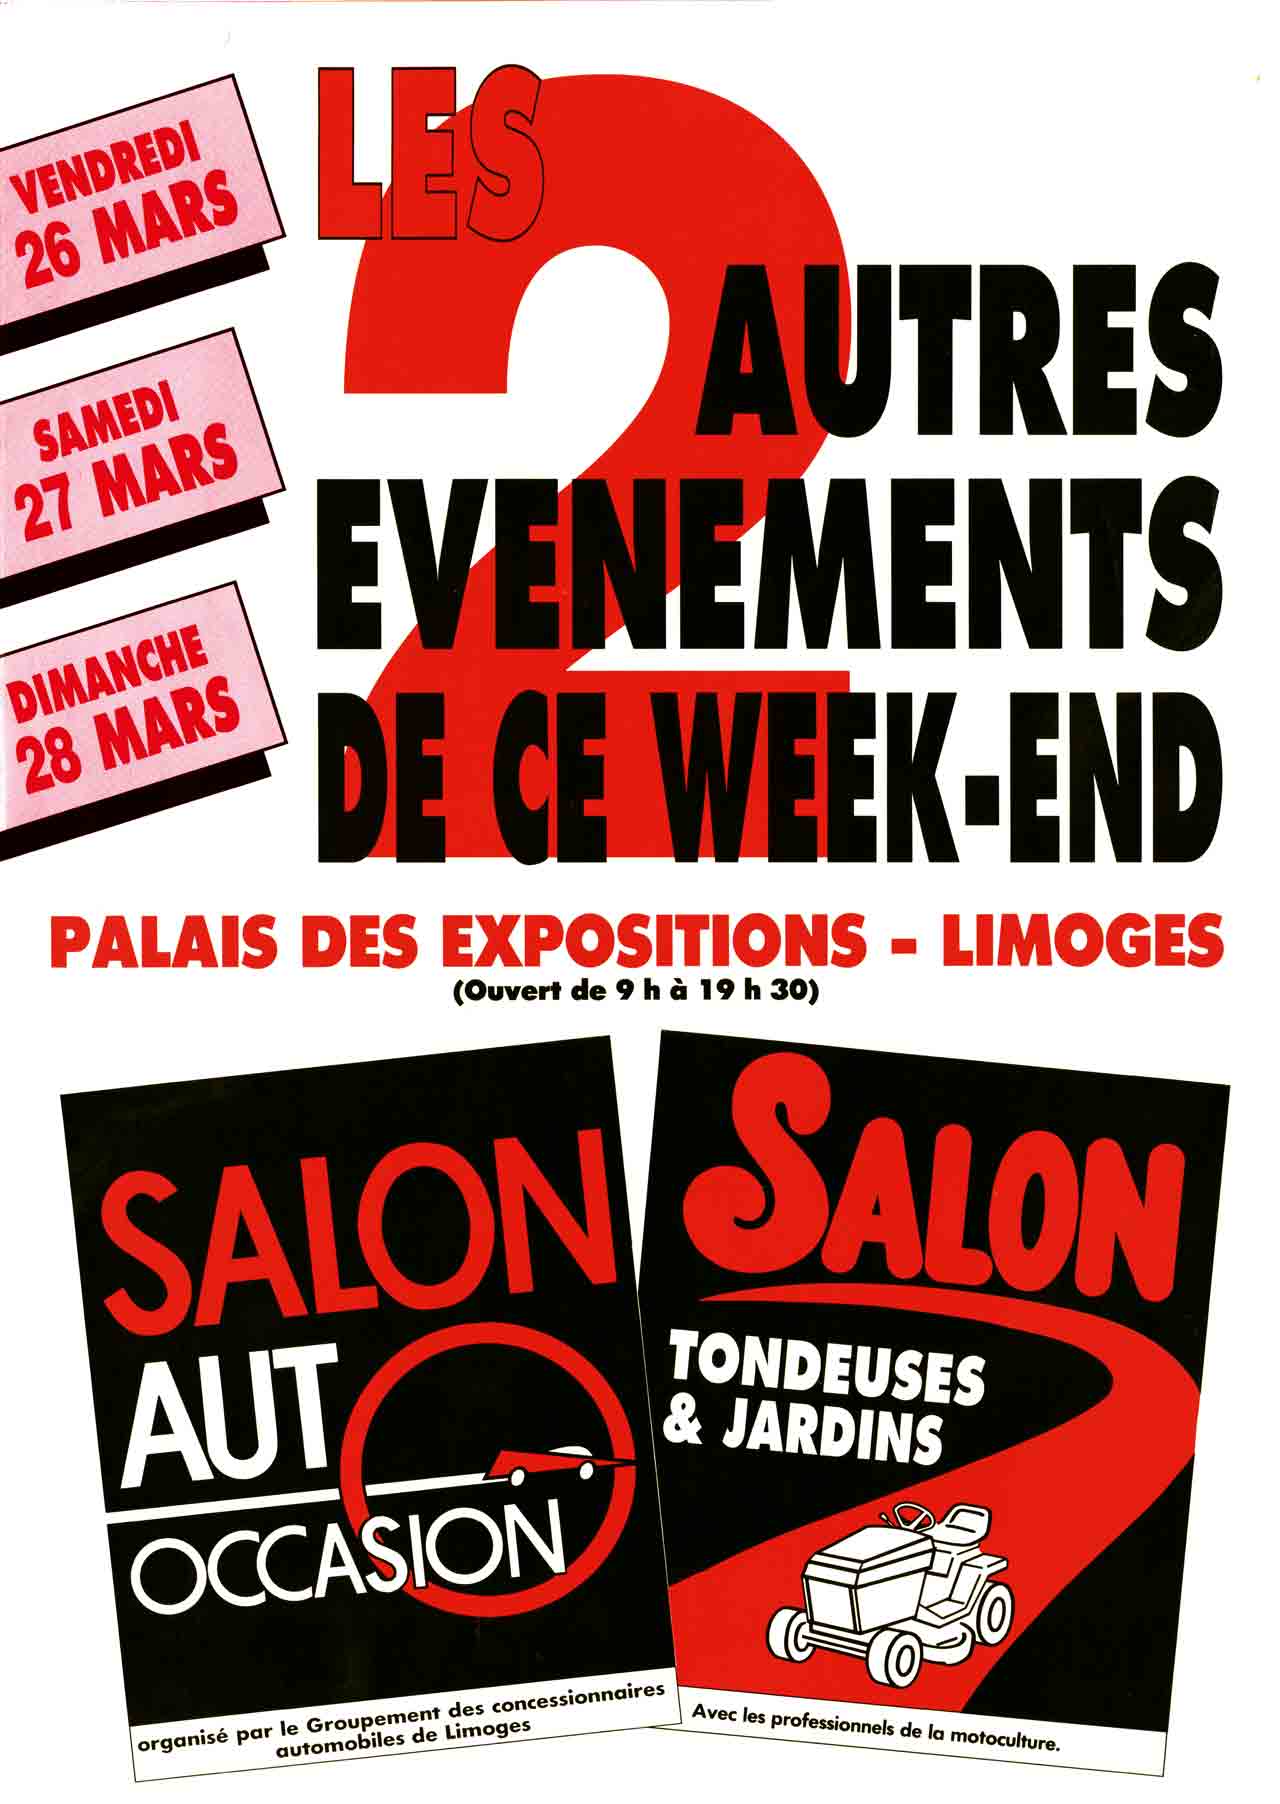 Recto Flyer dépliant Salon Auto Occasion, Scandere - 1992. Marc-André - BD Illustration Graphisme - Limoges.